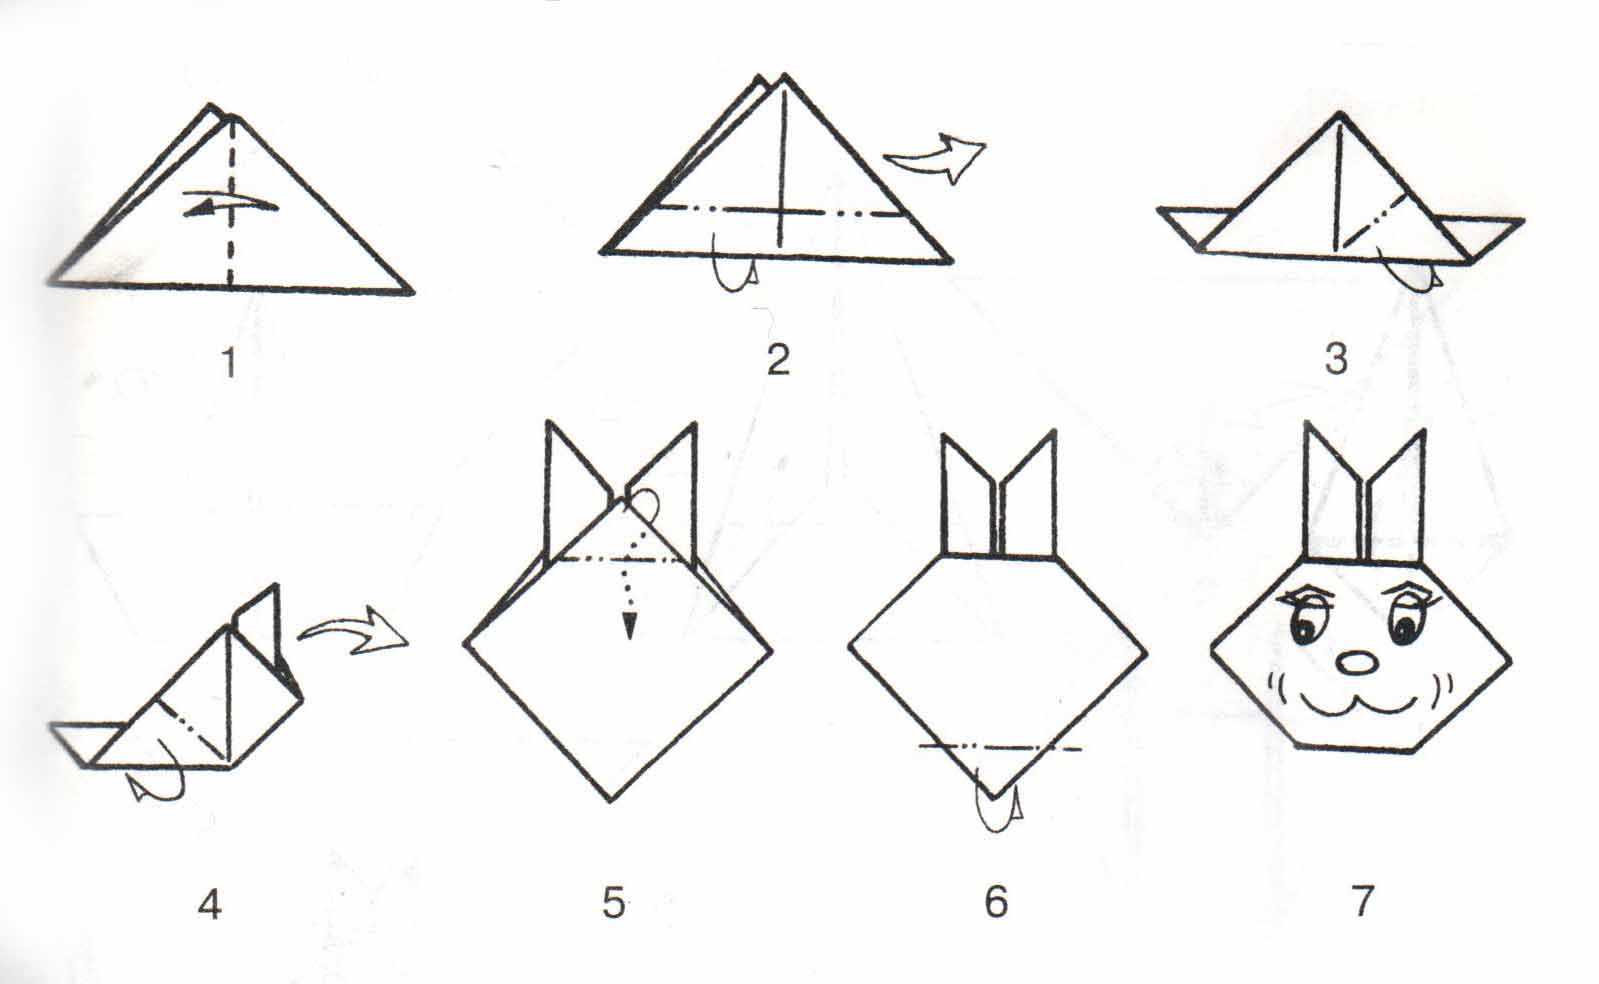 Оригами для детей 5 – 6 лет